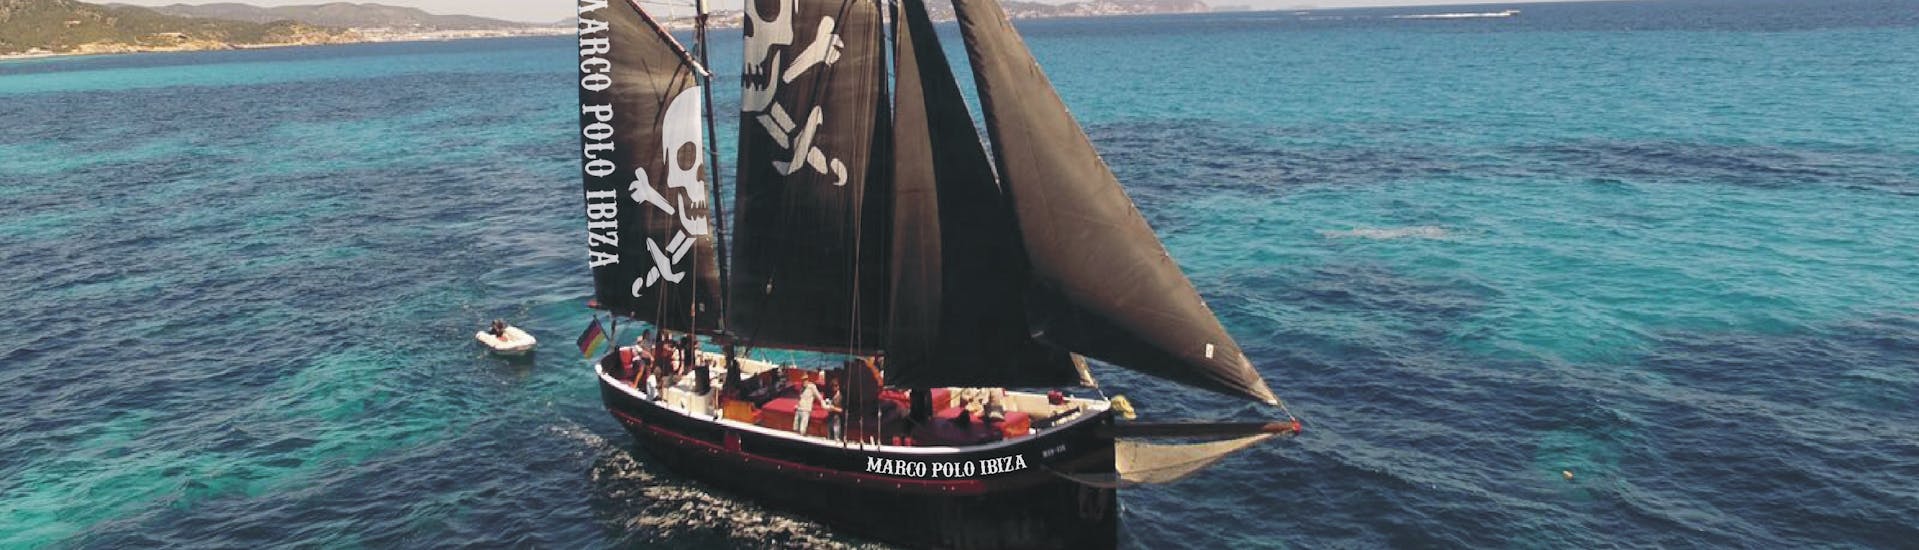 Nuestro barco pirata está en medio del agua durante la excursión en velero pirata a Formentera desde Ibiza con Apéritif & Snorkeling con Marco Polo Ibiza.